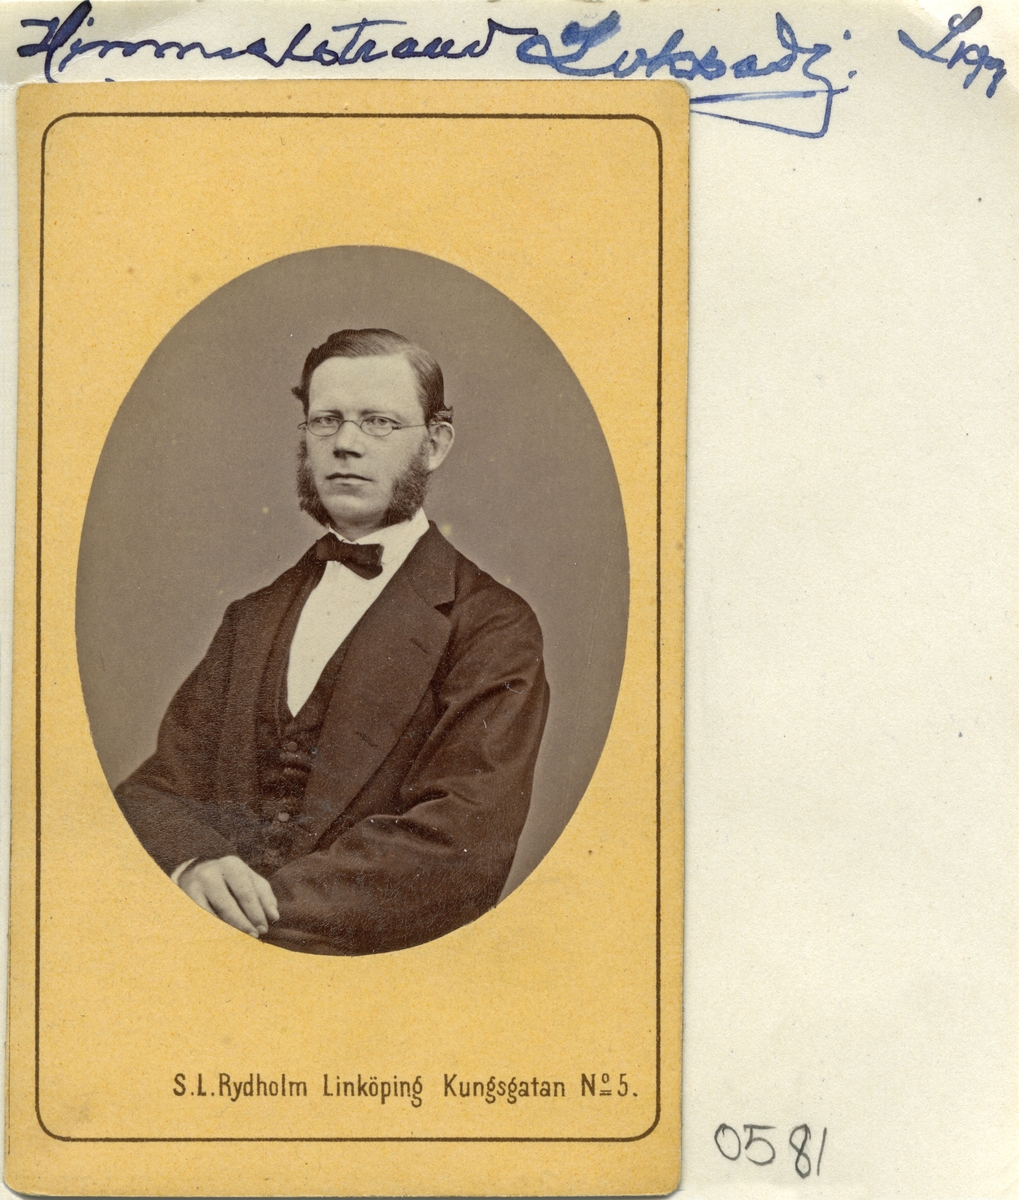 Porträtt av Johan Ludvig Viktor Himmelstrand, född i Västervik 1834. Vid tiden för bilden läroverksadjunkt vid Linköpings läroverk. Gift i Hudiksvall 1869 med Walborg Wennberg. Himmelstrand hade då tjänst vid Hudiksvalls läroverk. Död i Sundsvall 1922.